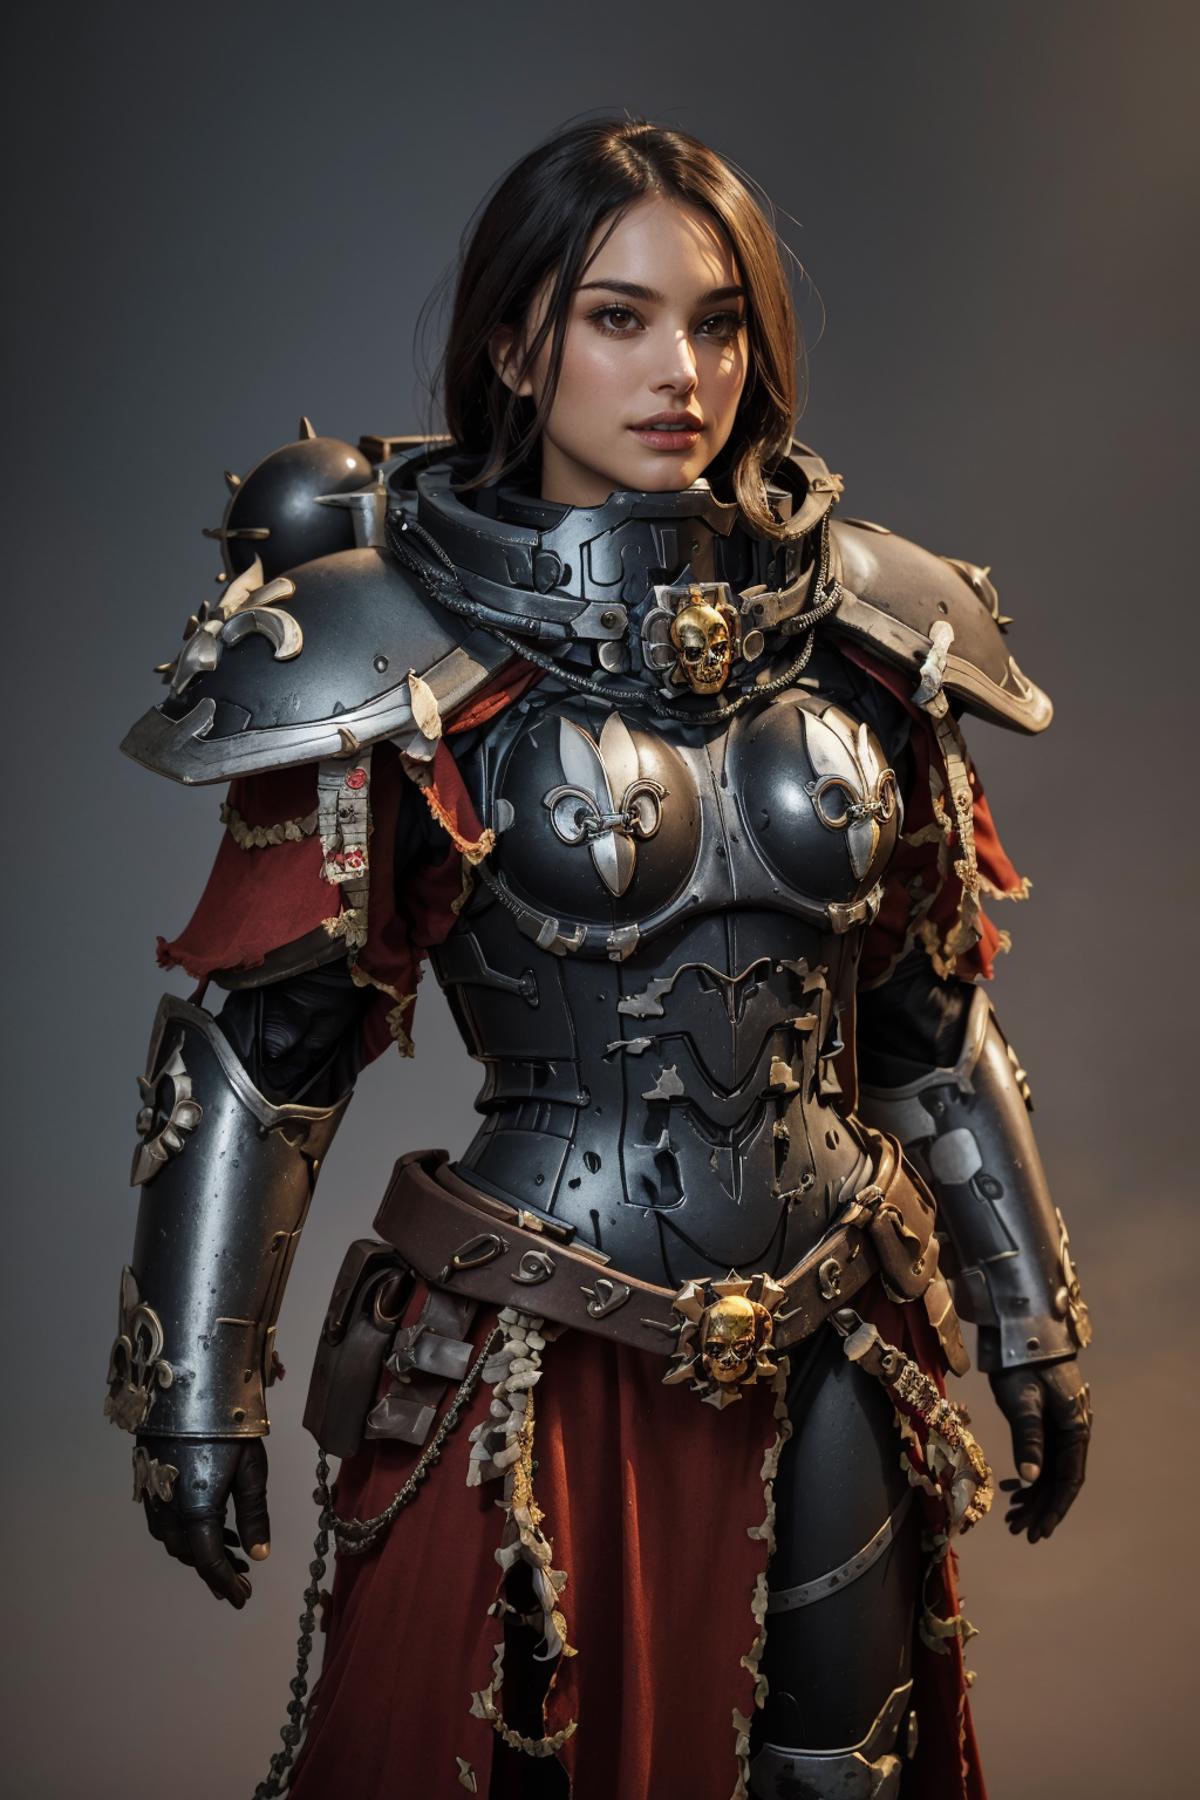 Warhammer 40K Adepta Sororitas Sister of Battle armor - by EDG image by r3b311i0n